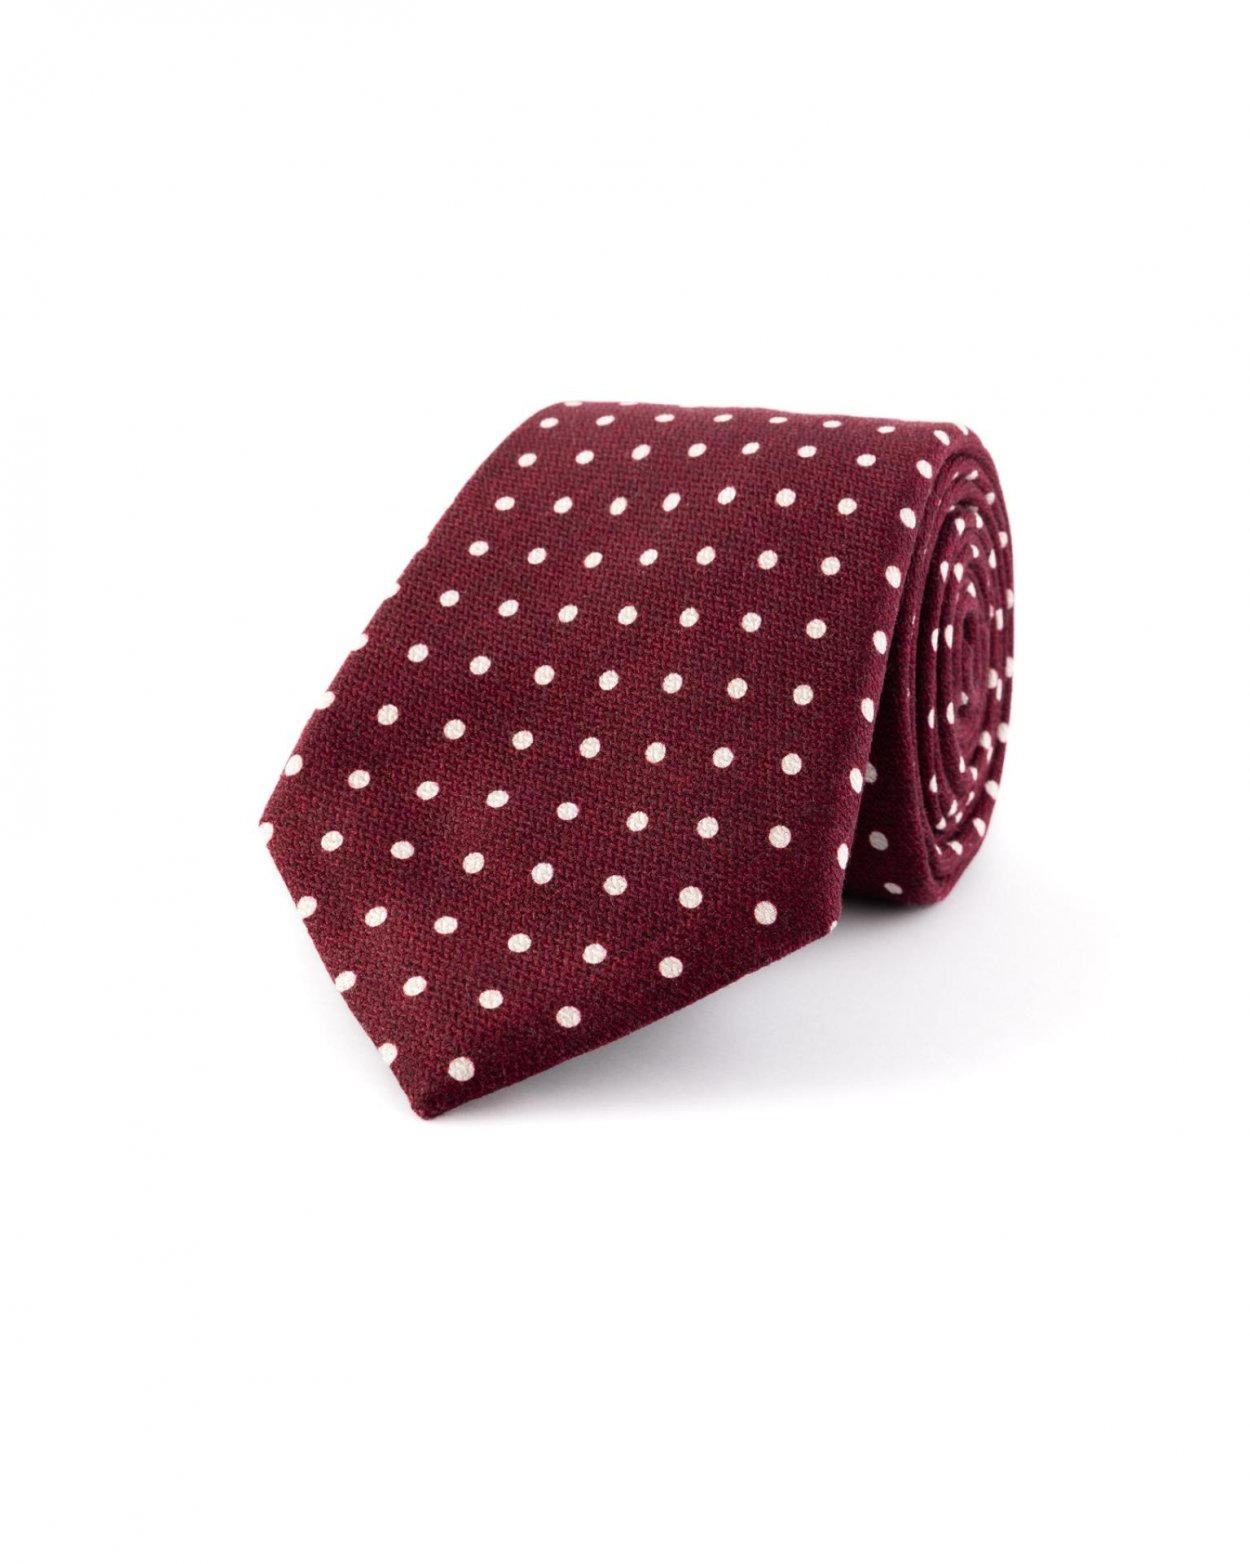 Vínová hedvábná kravata s puntíkem